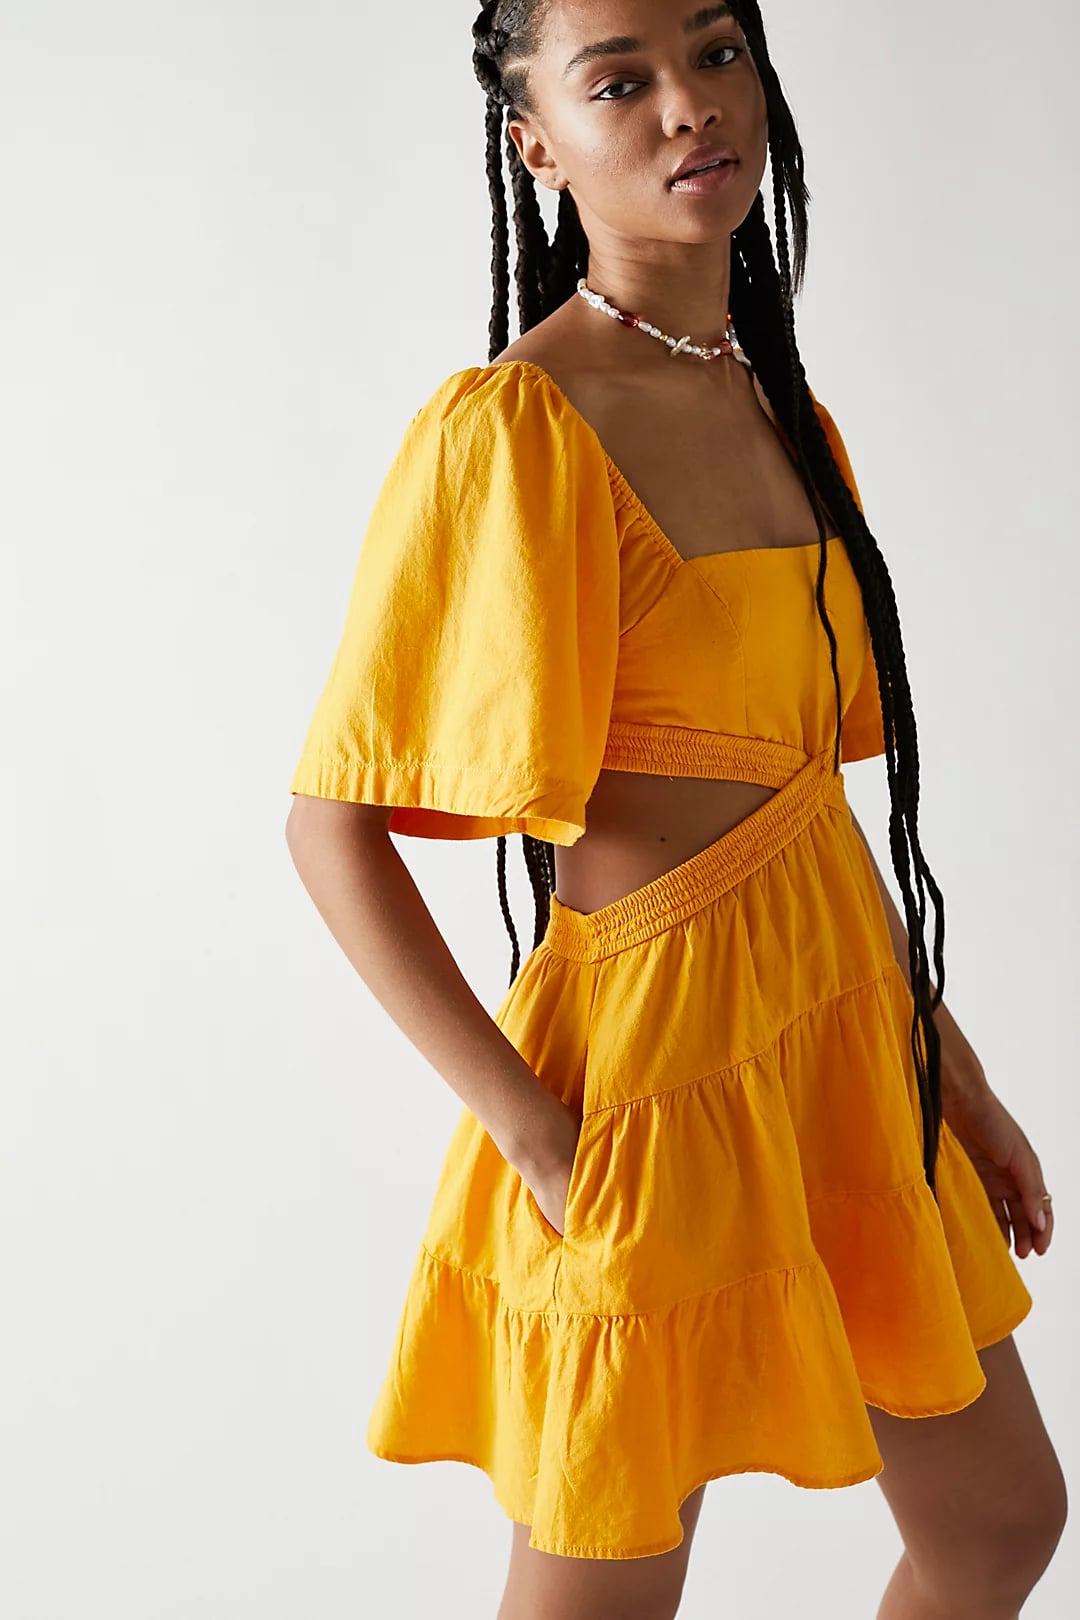 A Yellow Dress: Endless Summer Cross of ...